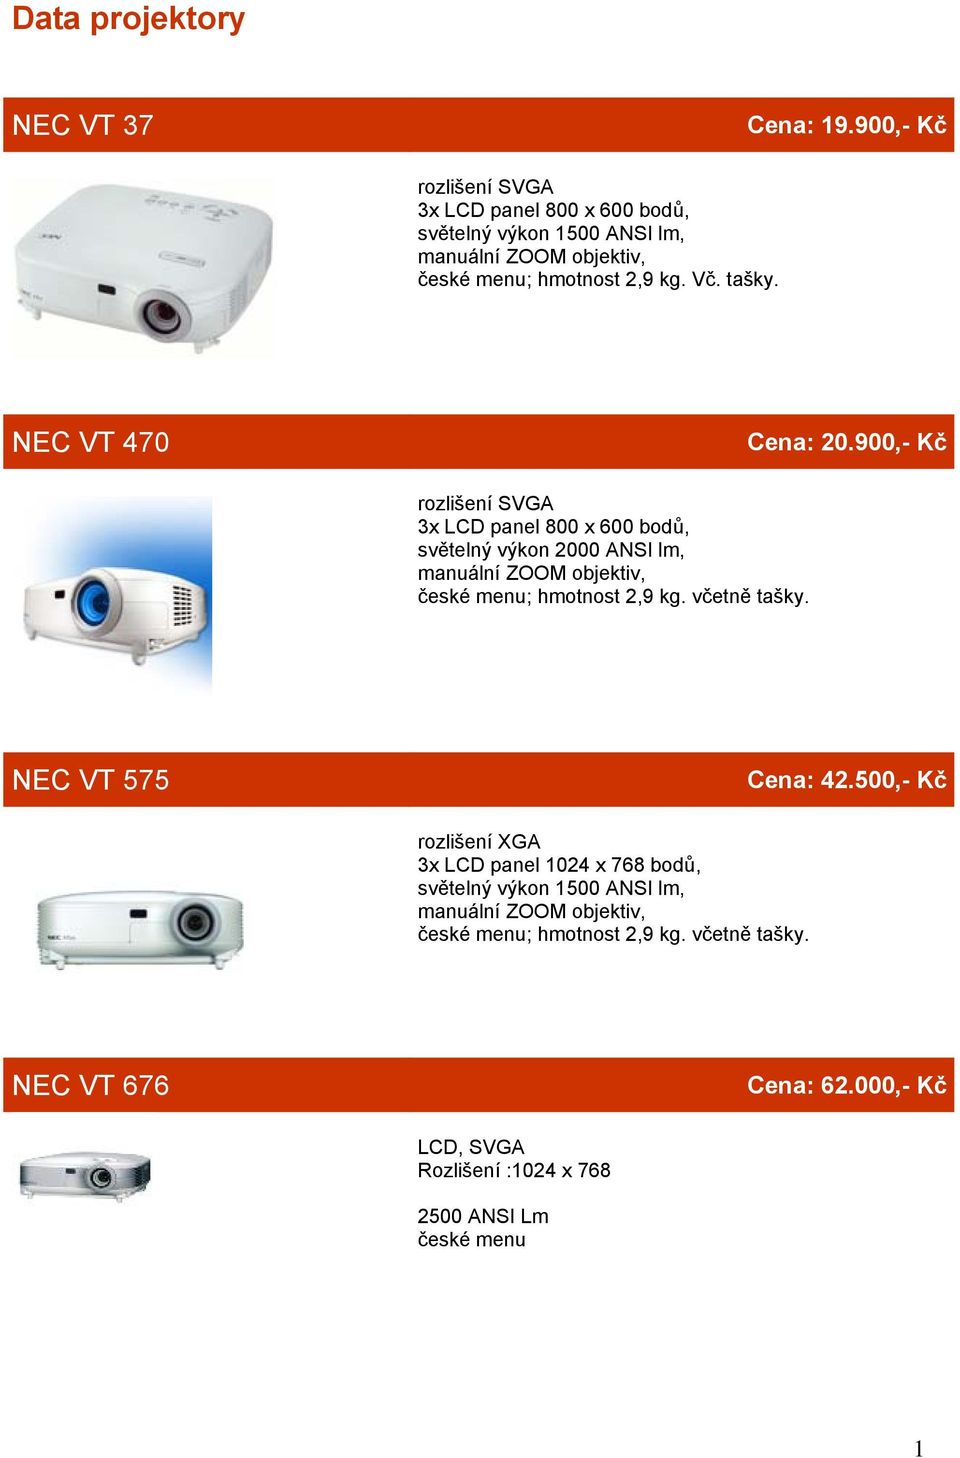 NEC VT 470 Cena: 20.